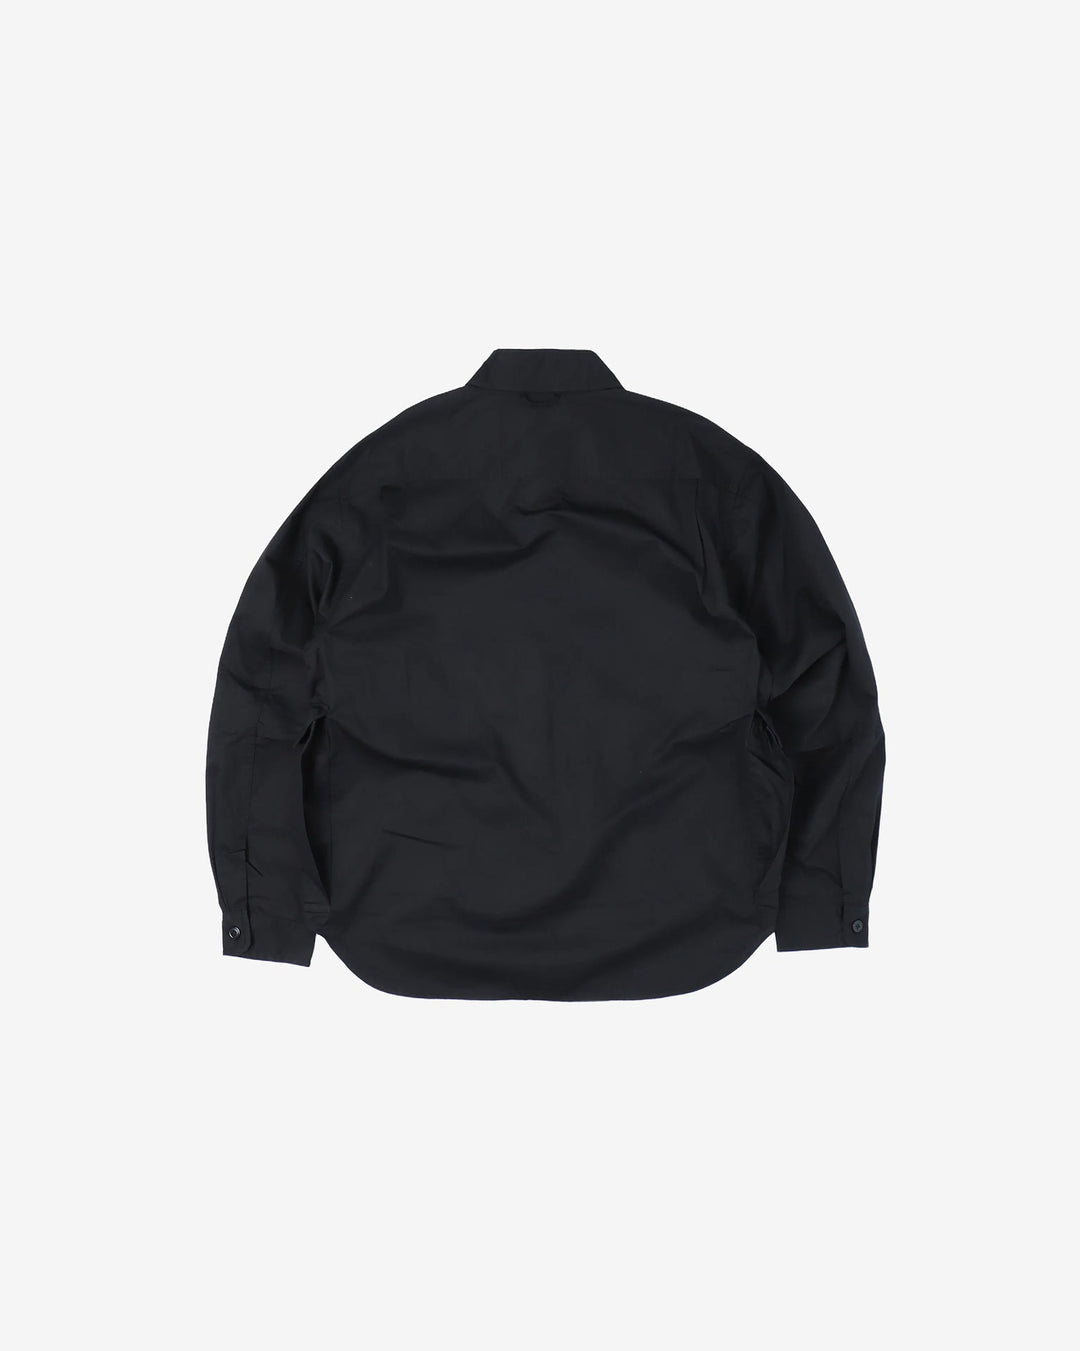 Workware - M51 Shirt #600 - Black